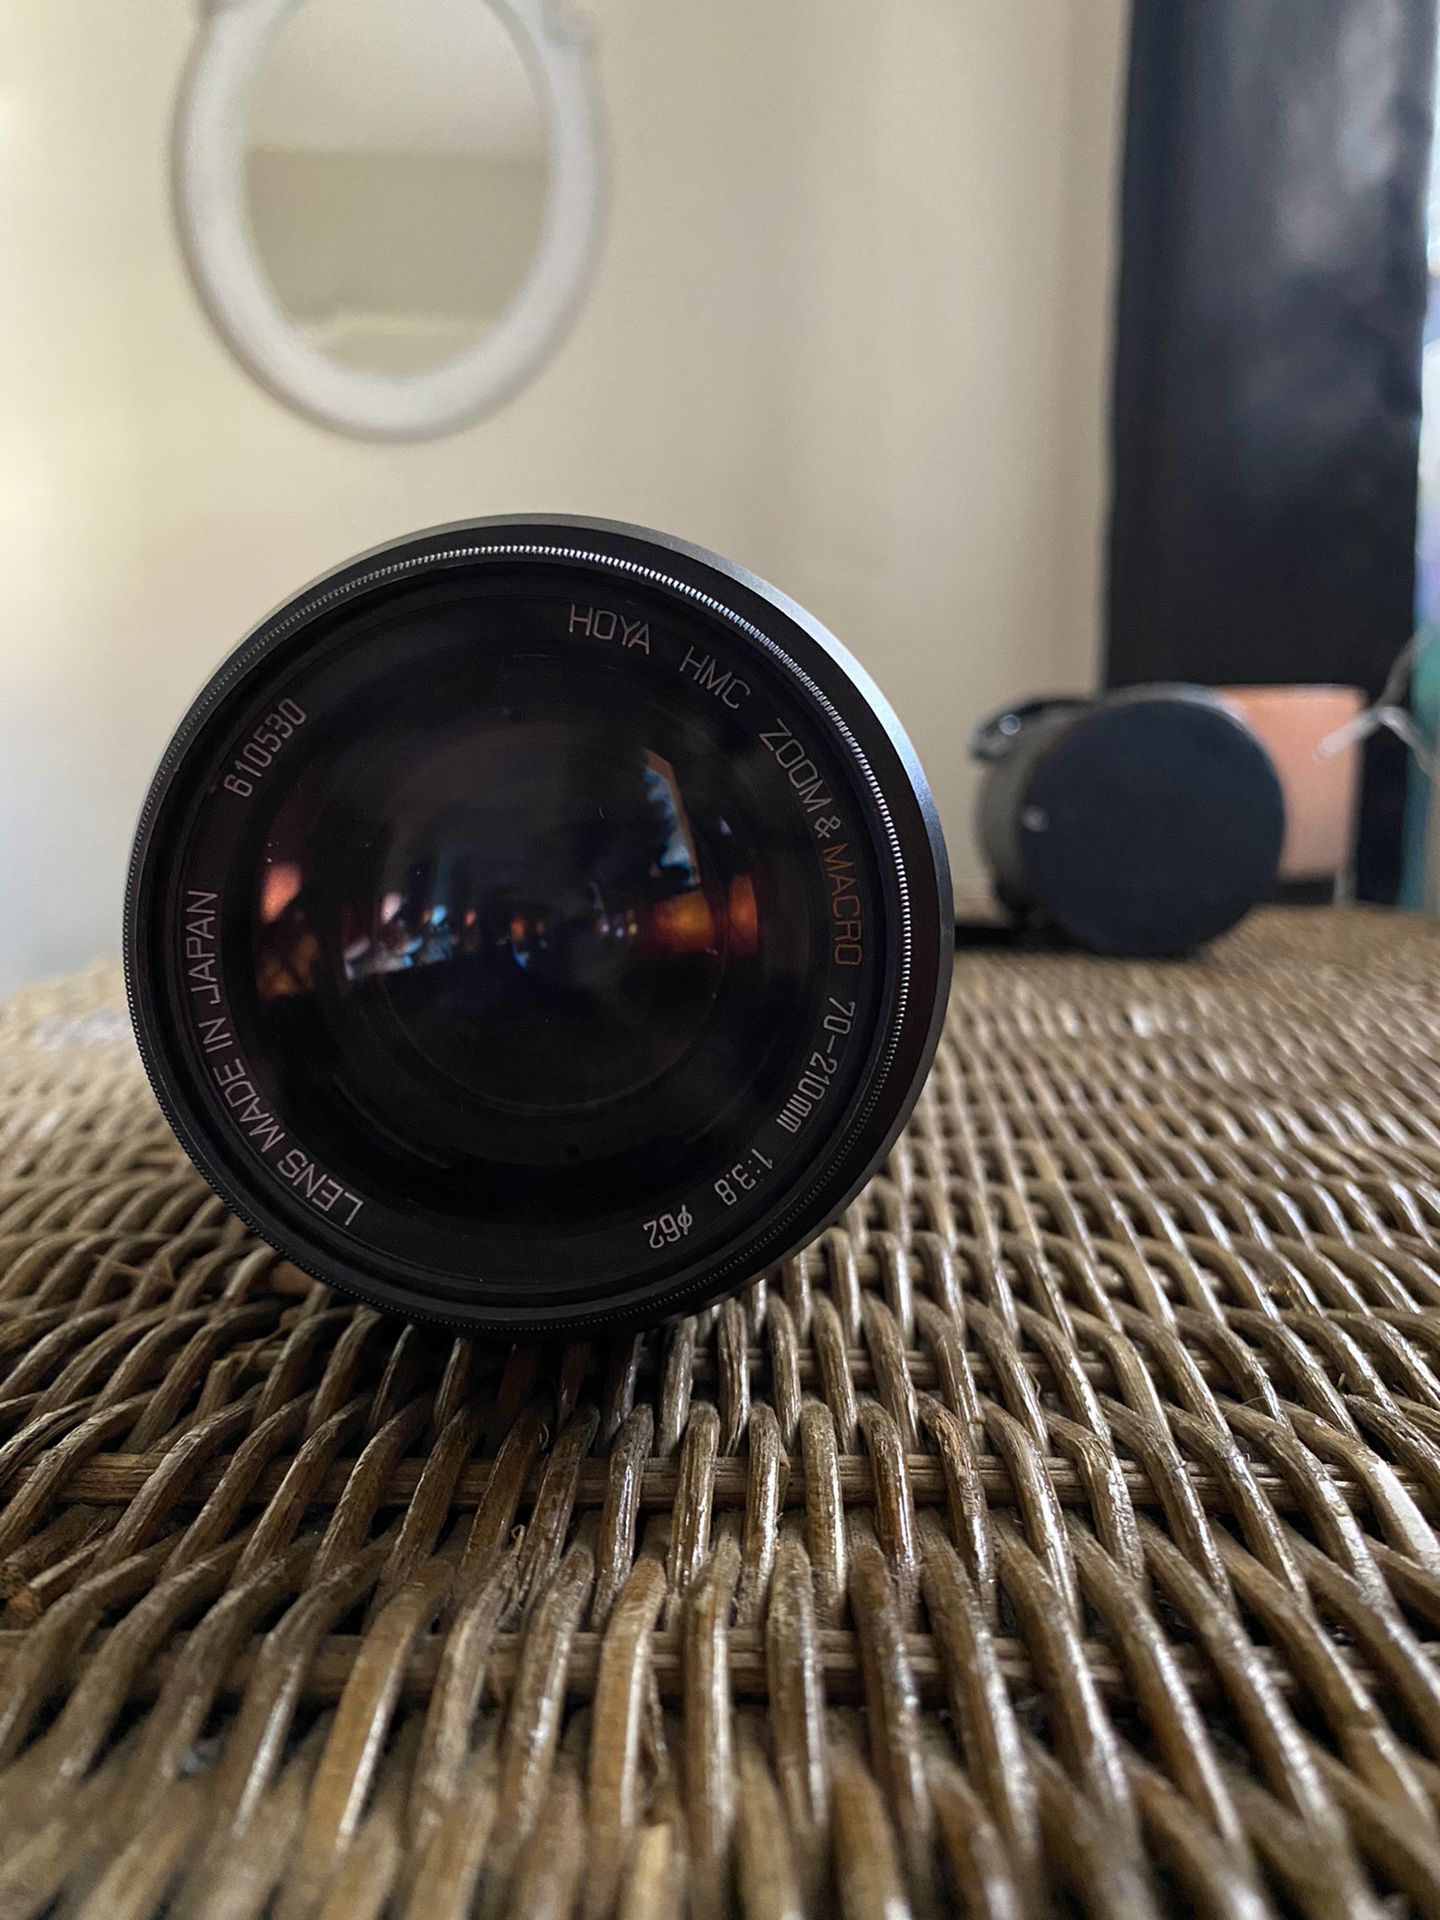 Film camera lenses